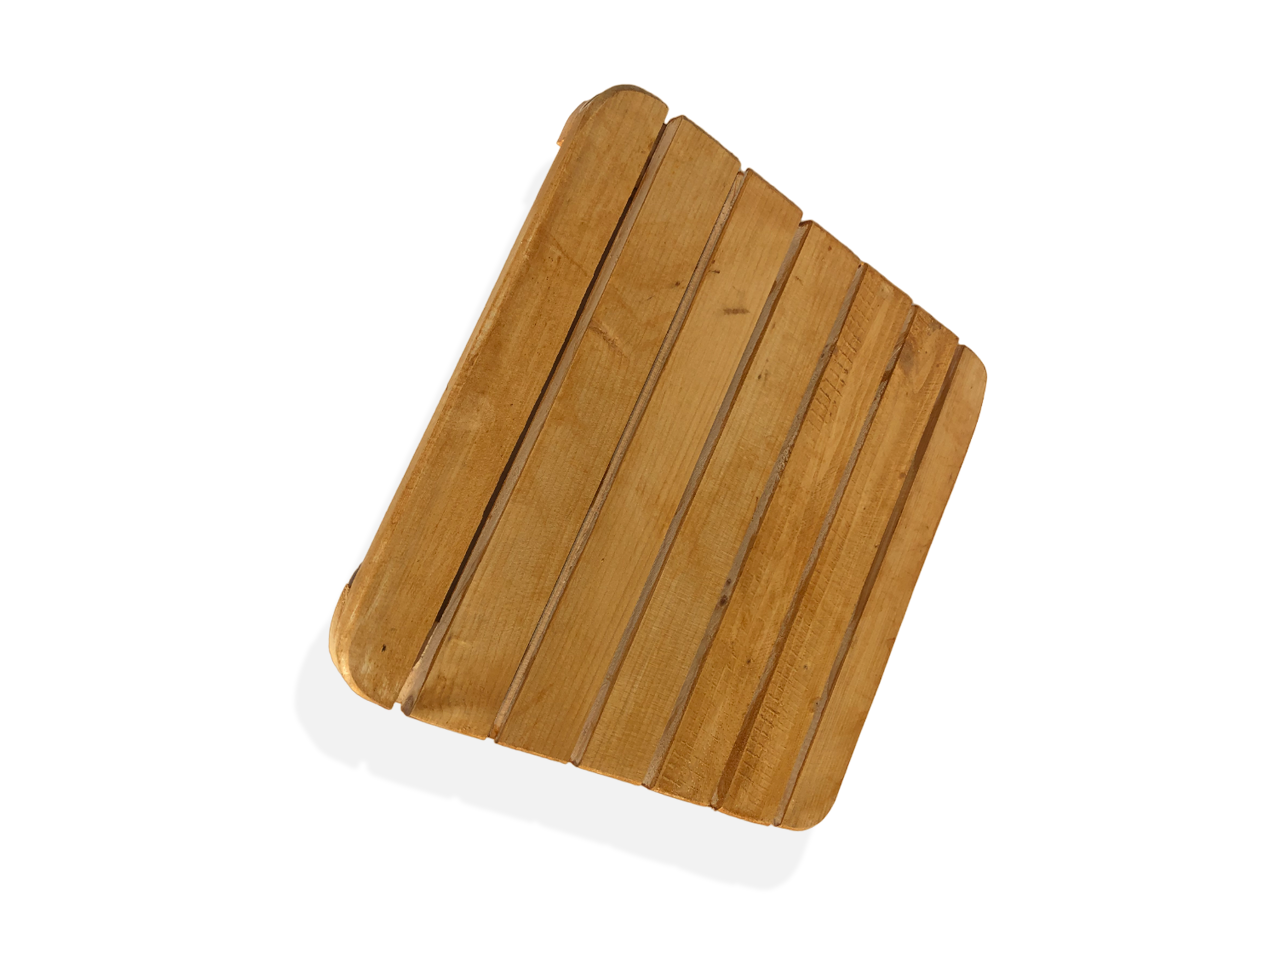 Tagliere a fasce di legno di media grandezza.